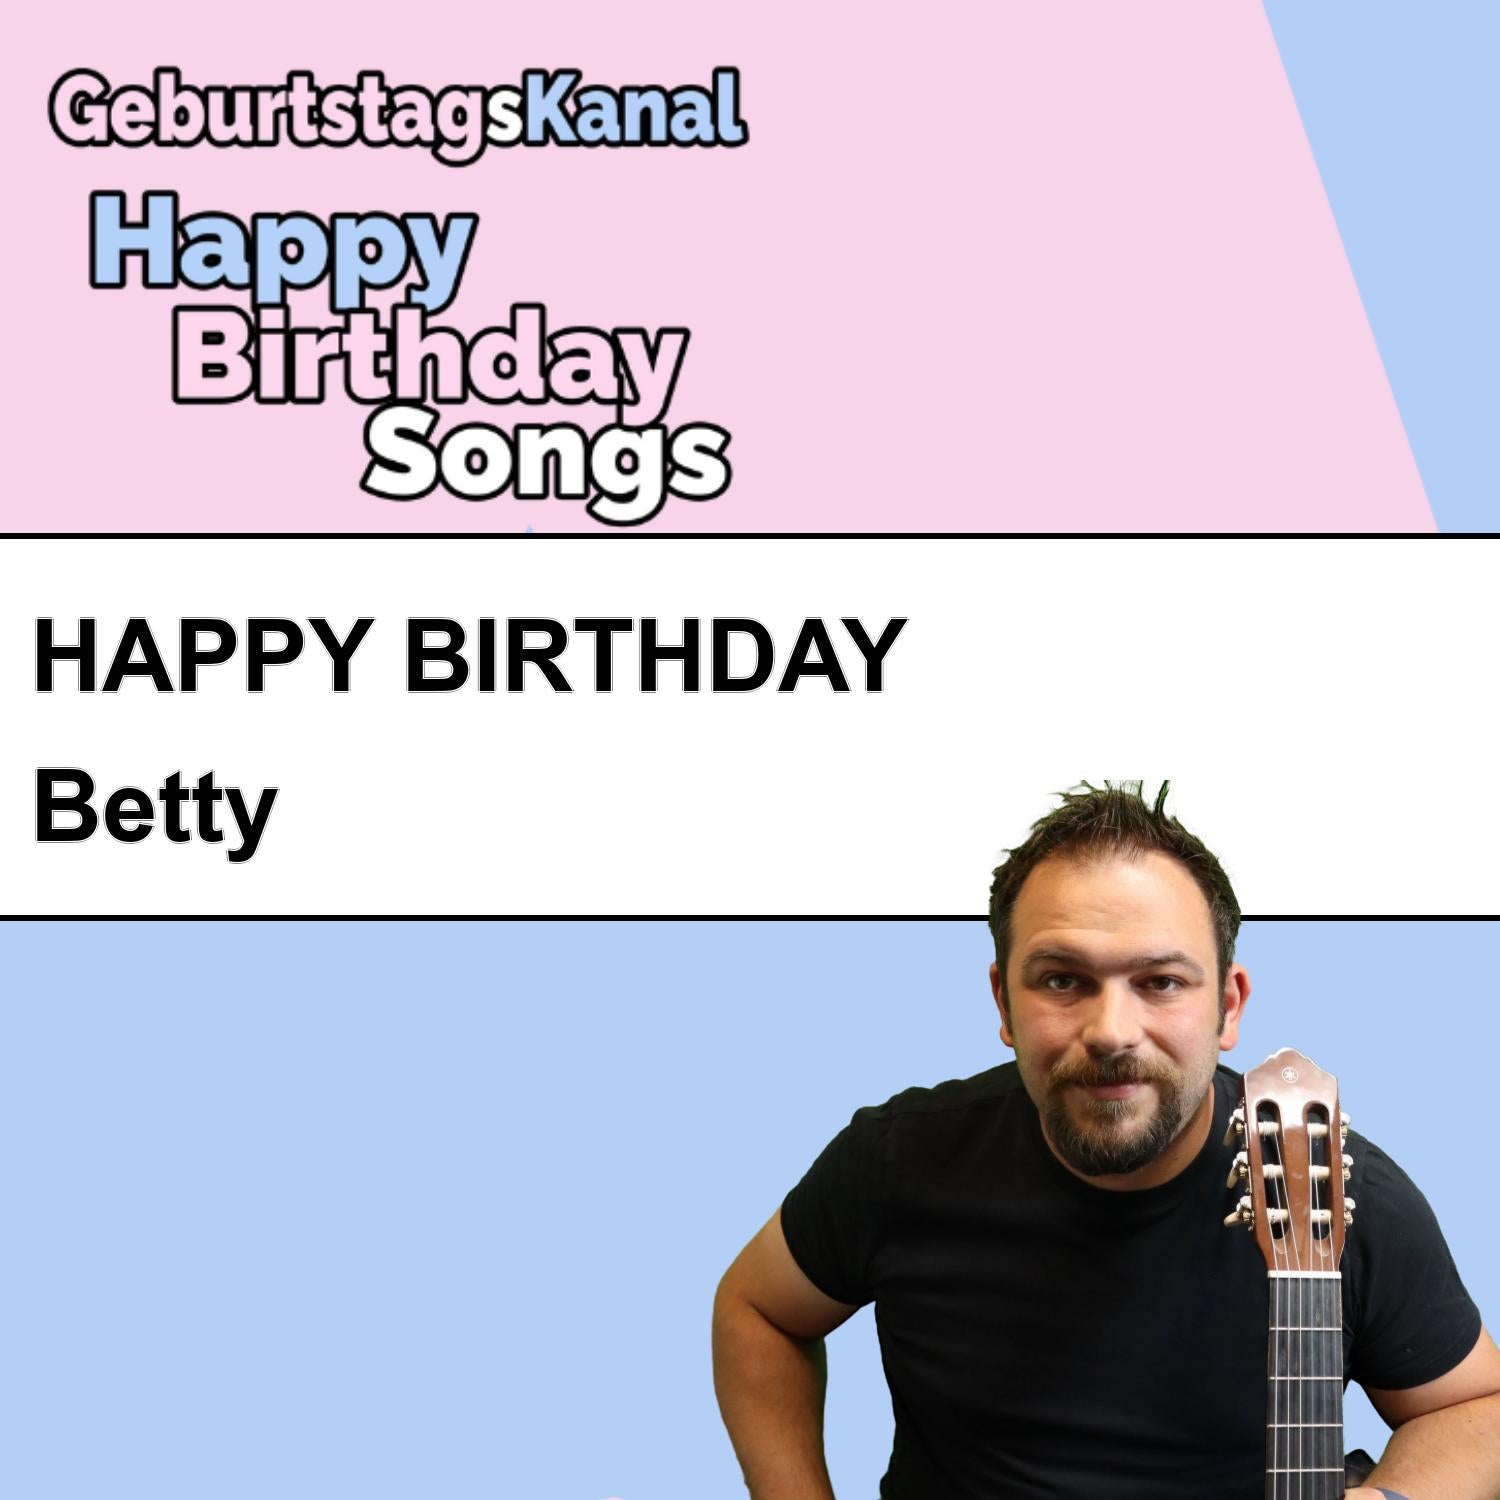 Produktbild Happy Birthday to you Betty mit Wunschgrußbotschaft